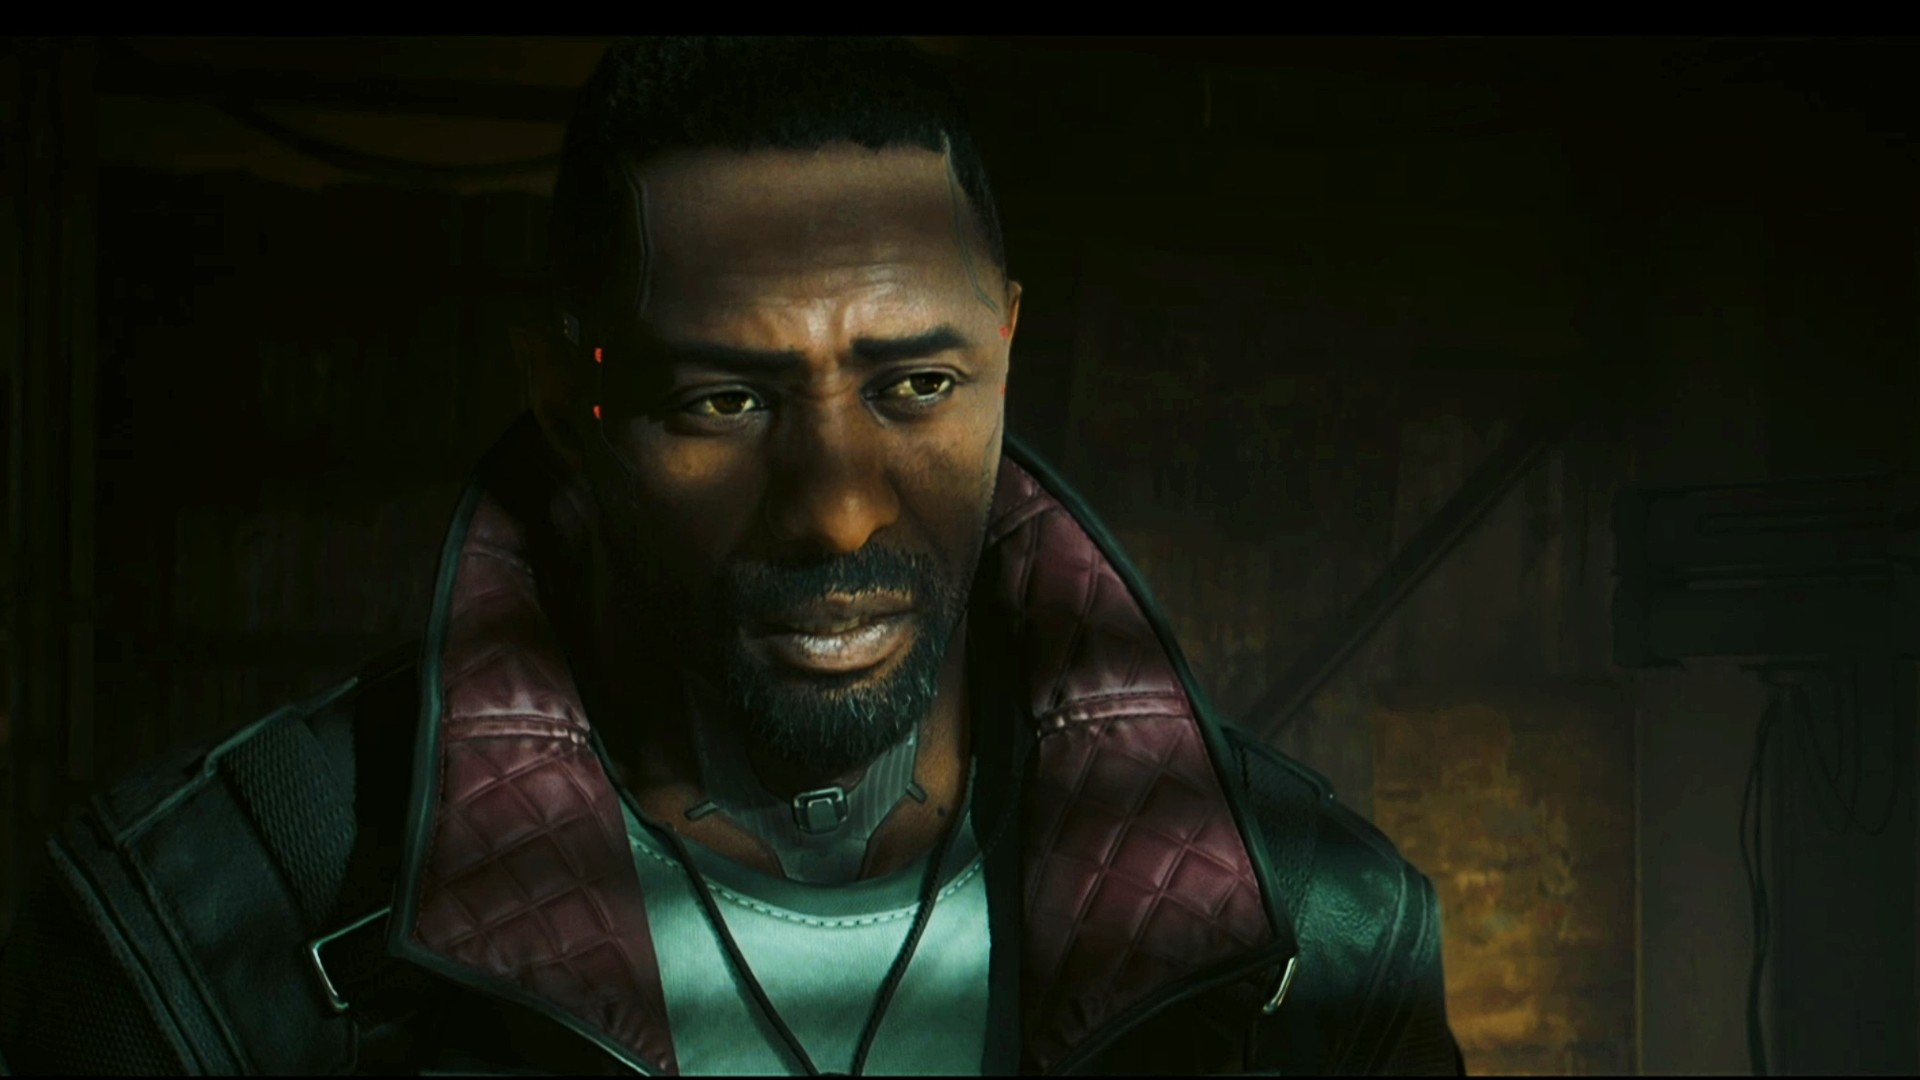 Cyberpunk 2077 expansion stars Idris Elba